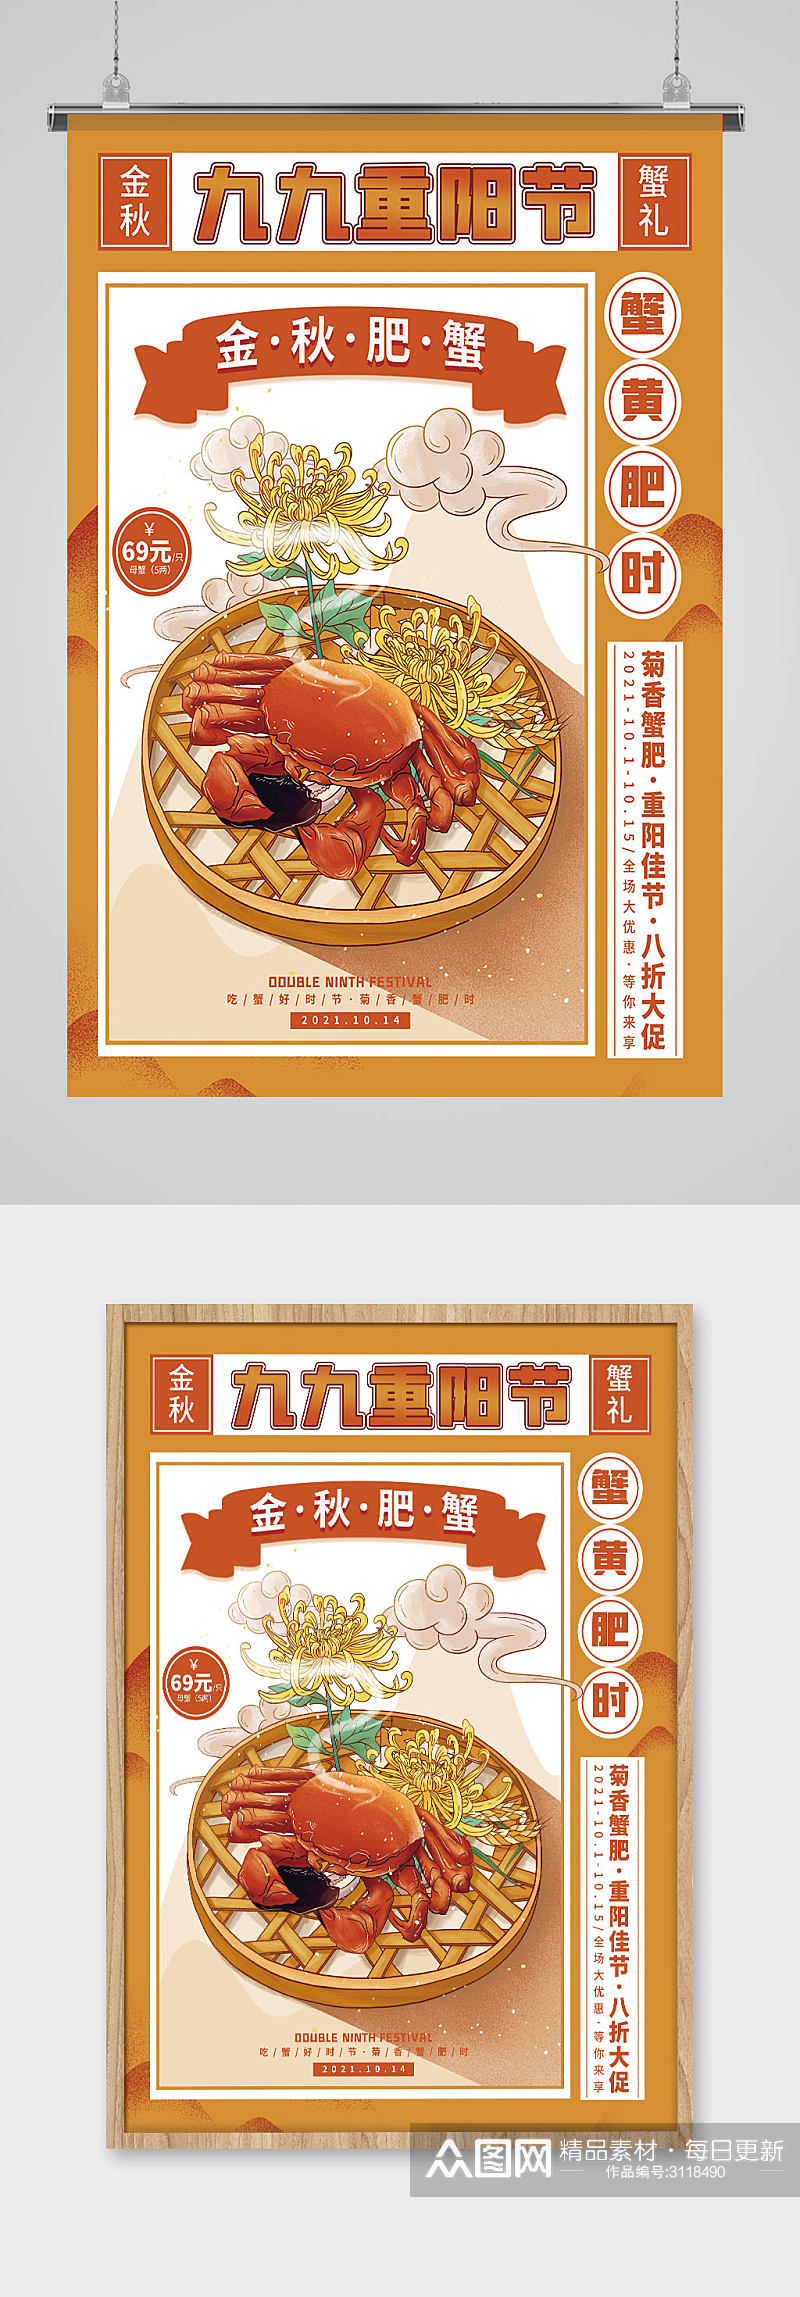 复古风重阳节螃蟹美食促销宣传海报素材